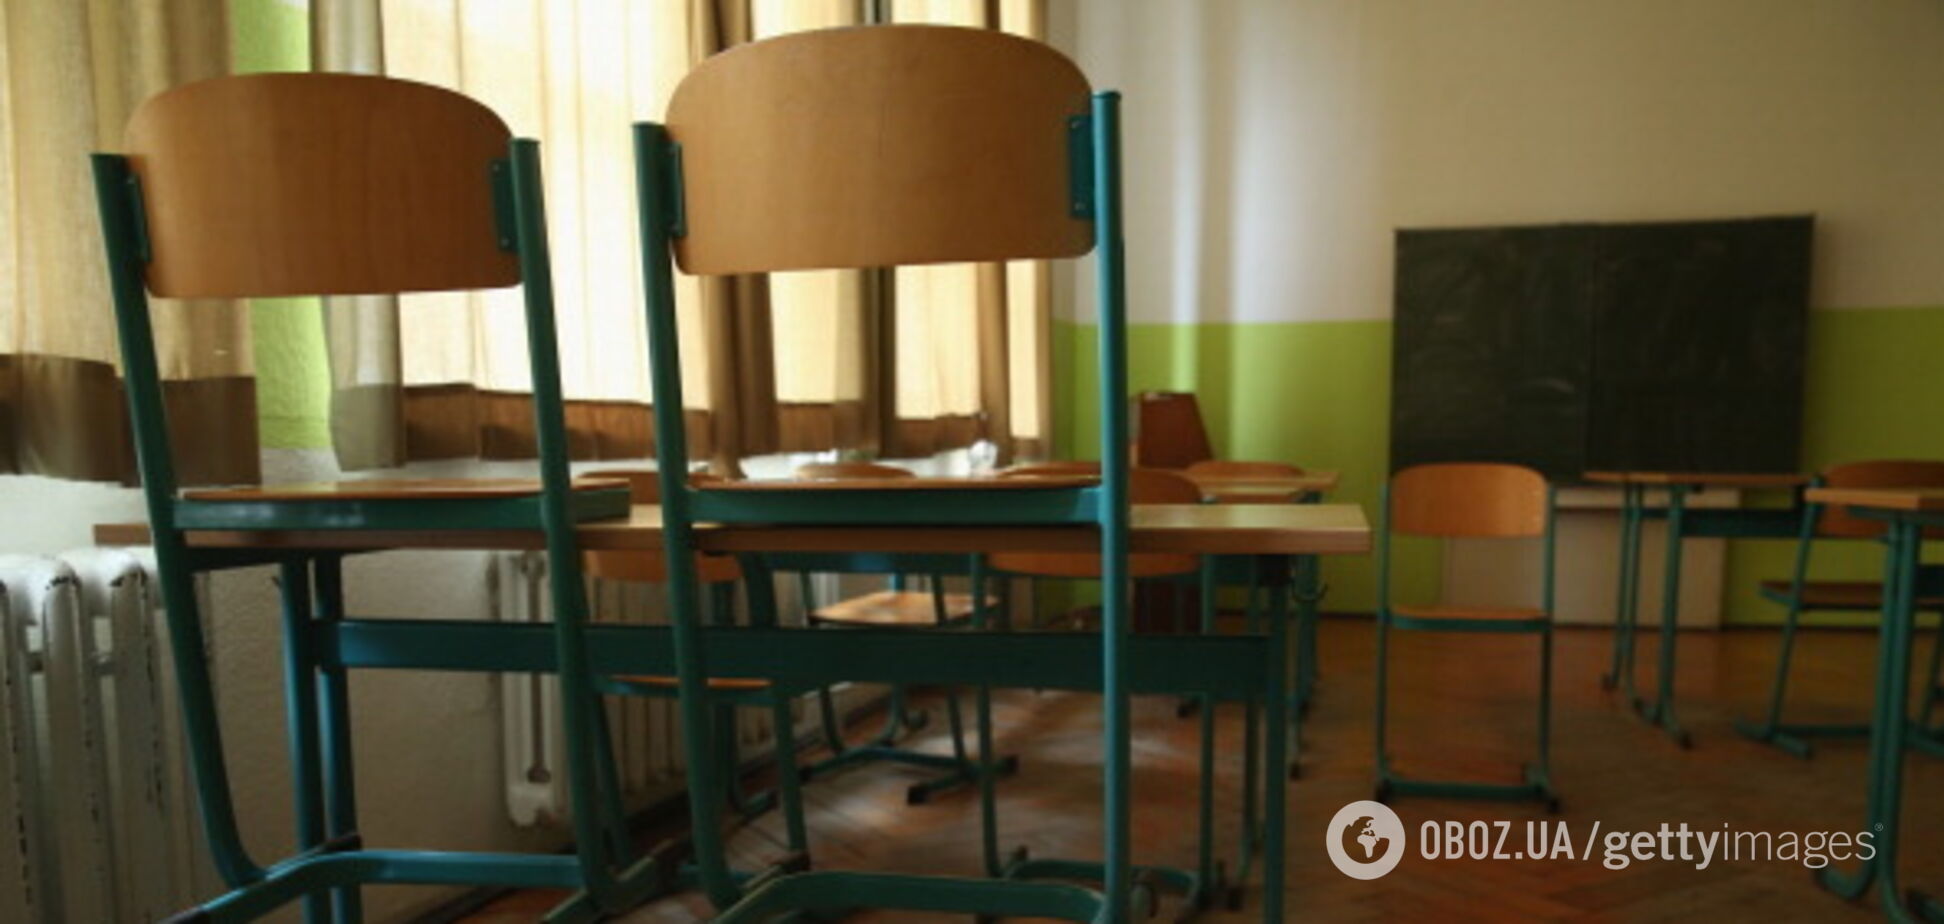 У селі на Львівщині майже 300 дітей вже три тижні не ходять до школи через директора: що трапилося